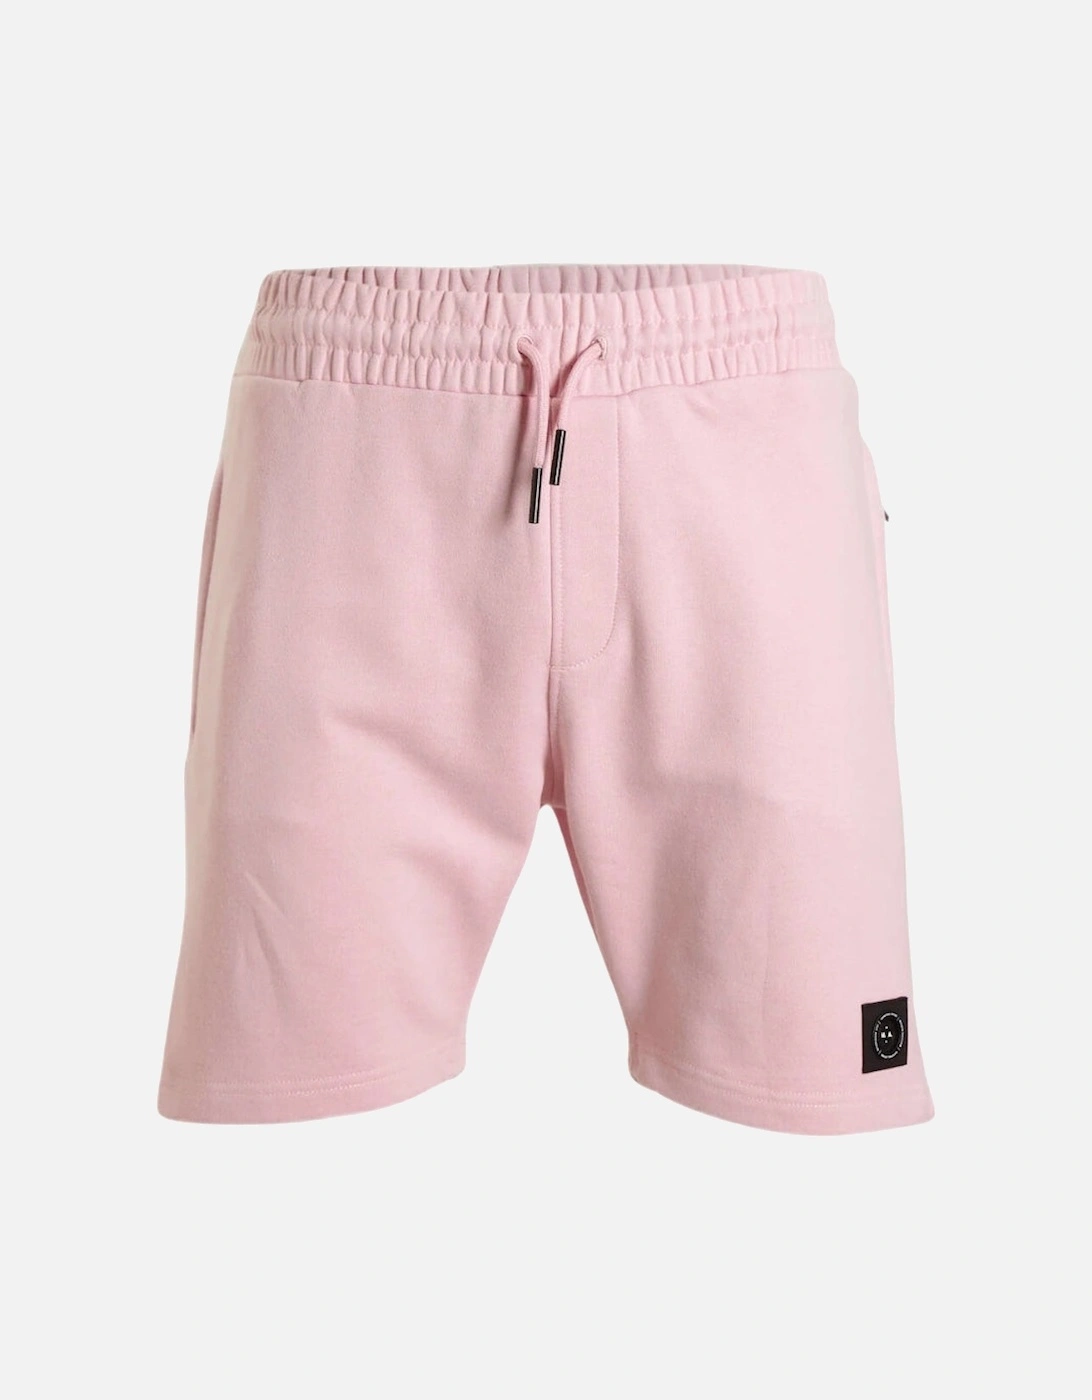 Siren Jersey Short - Pink, 4 of 3